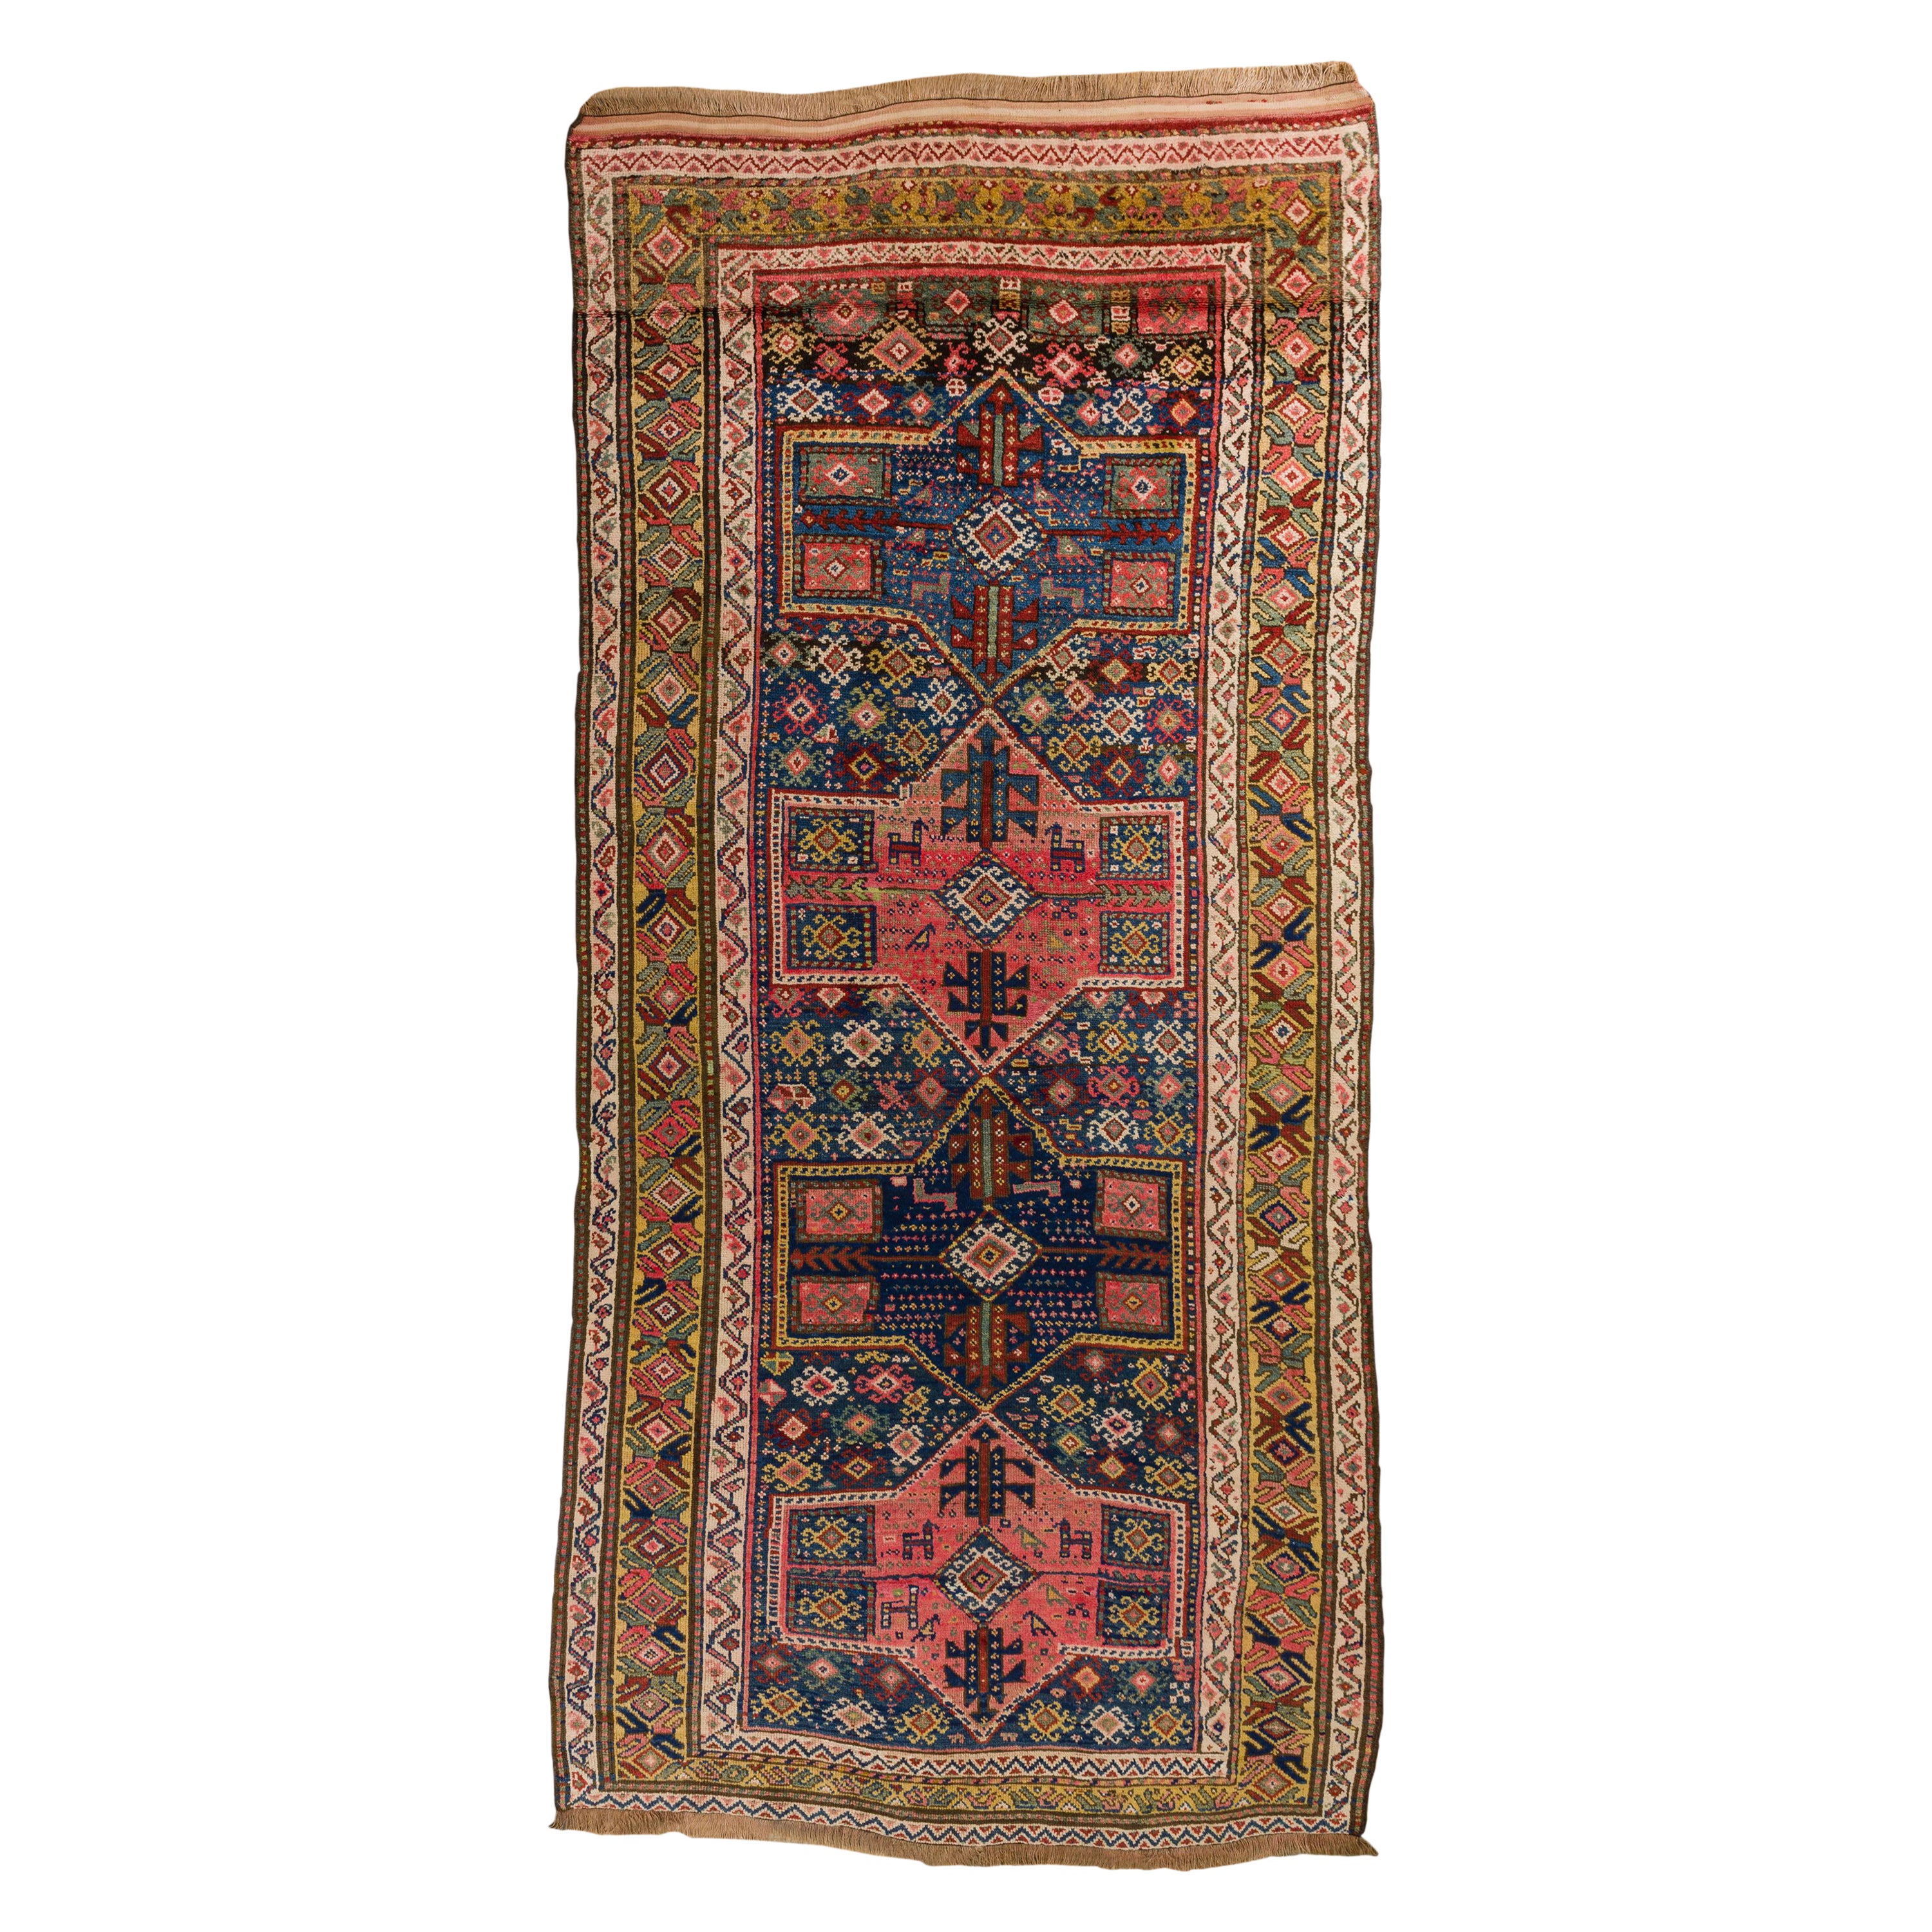 Old Kurdestan Carpet or Rug For Sale